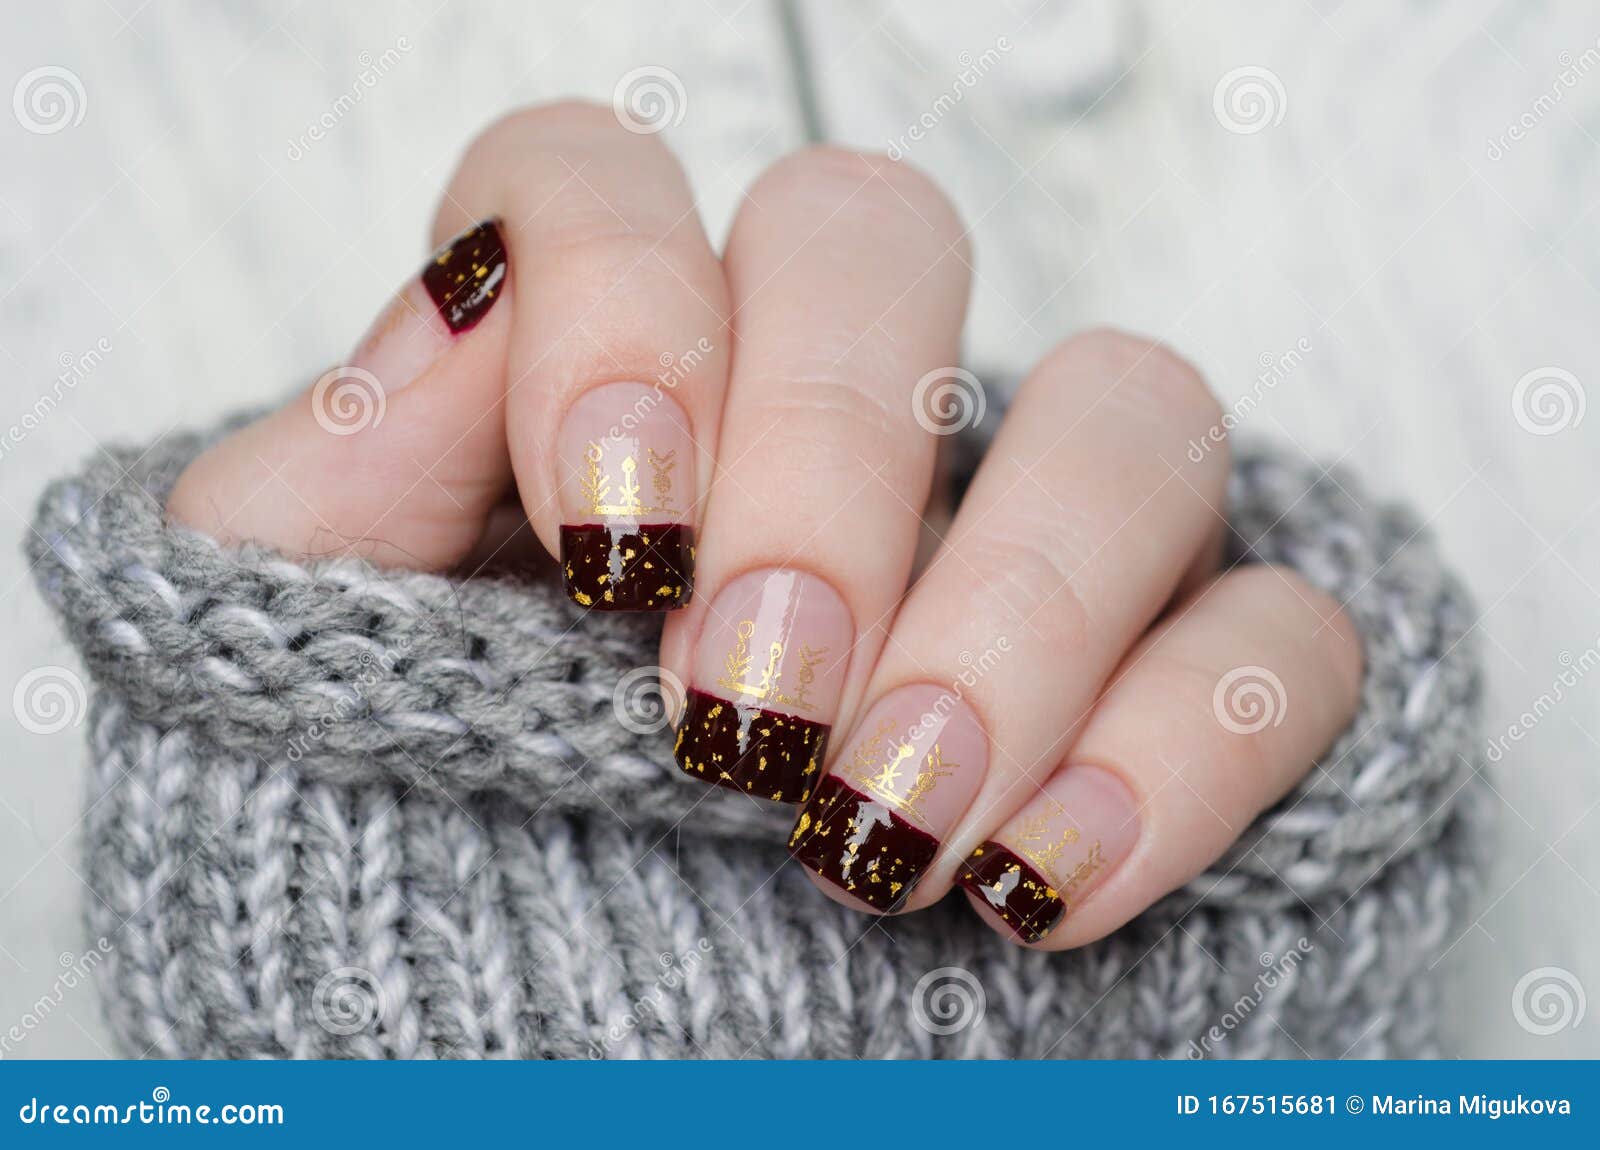 bordeaux french manicure gold flakes bordeaux french manicure gold flakes gray sweater 167515681